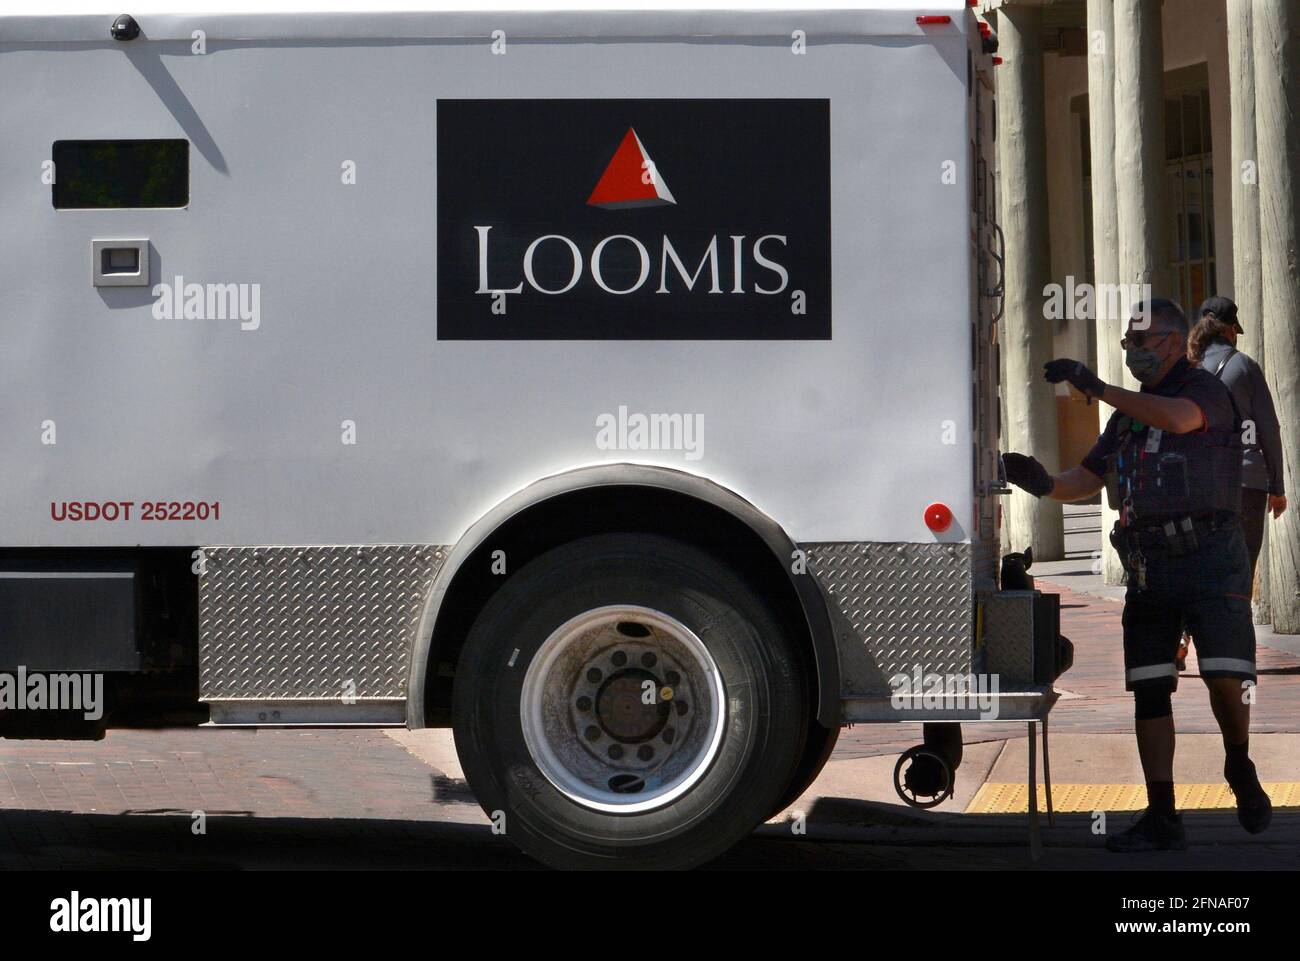 Un camion blindé Loomis fait une livraison d'argent à une banque à Santa Fe, au Nouveau-Mexique. Loomis Armored Inc. A son siège social à Stockholm, en Suède. Banque D'Images